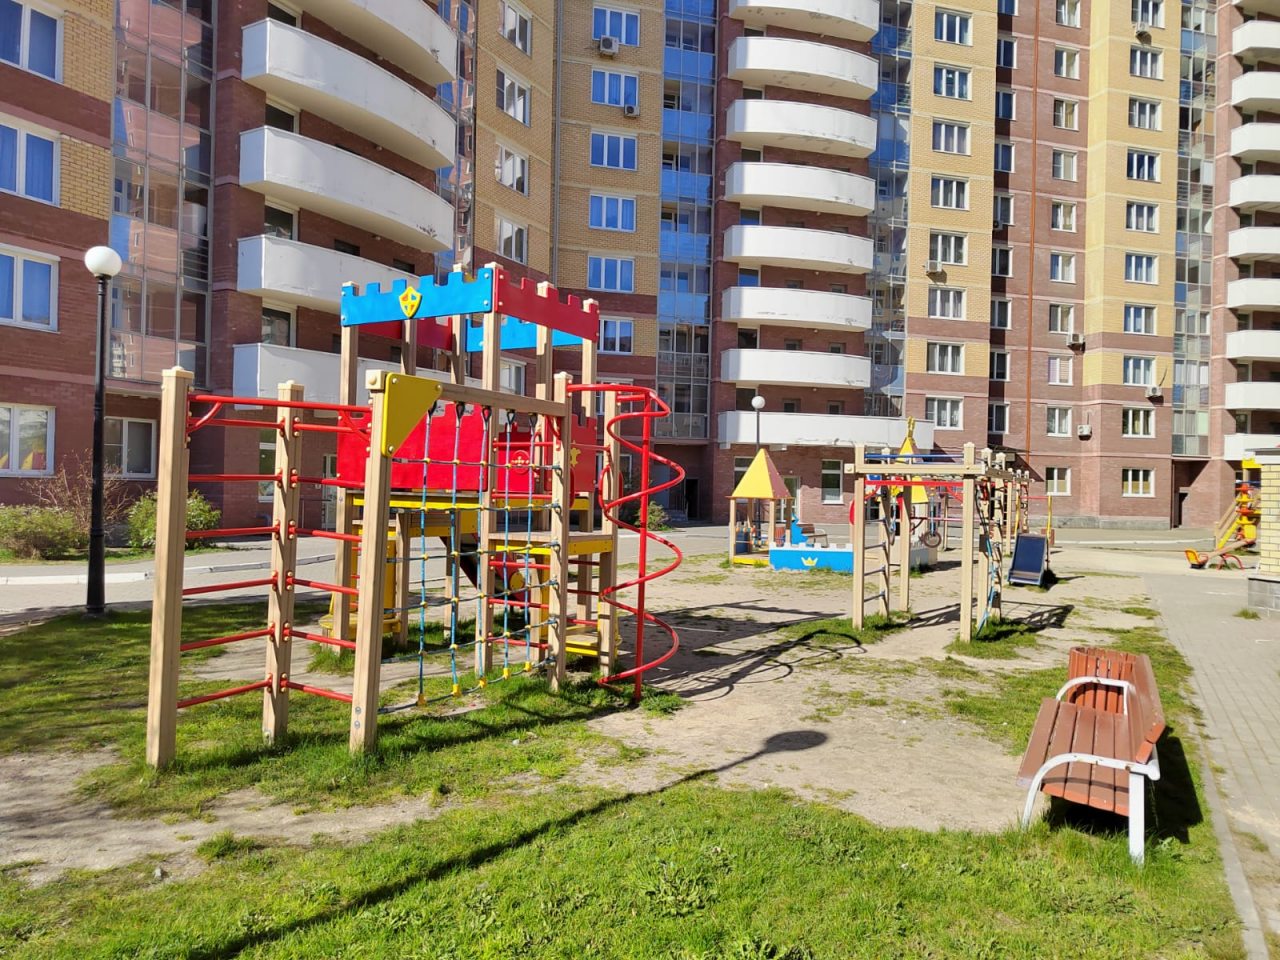 Во дворе установлена детская площадка для детей